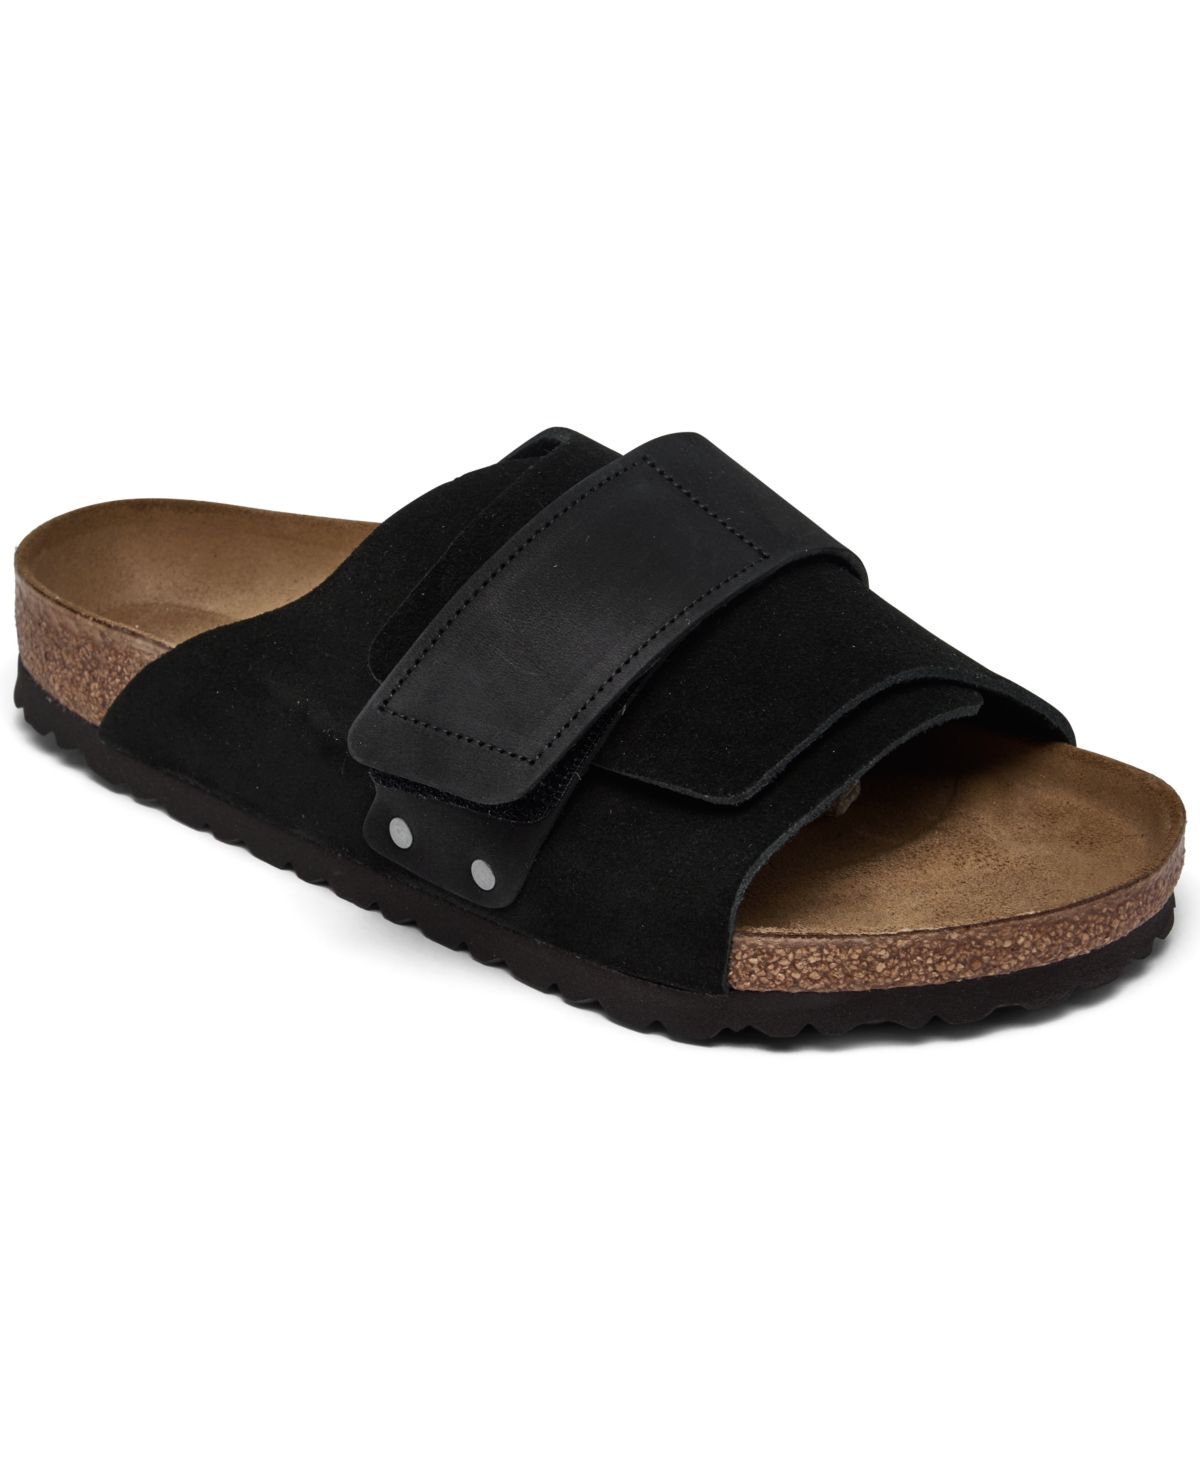 Birkenstock Men's Kyoto Nubuck Suede Leather Slide Sandals from Finish Line - Black